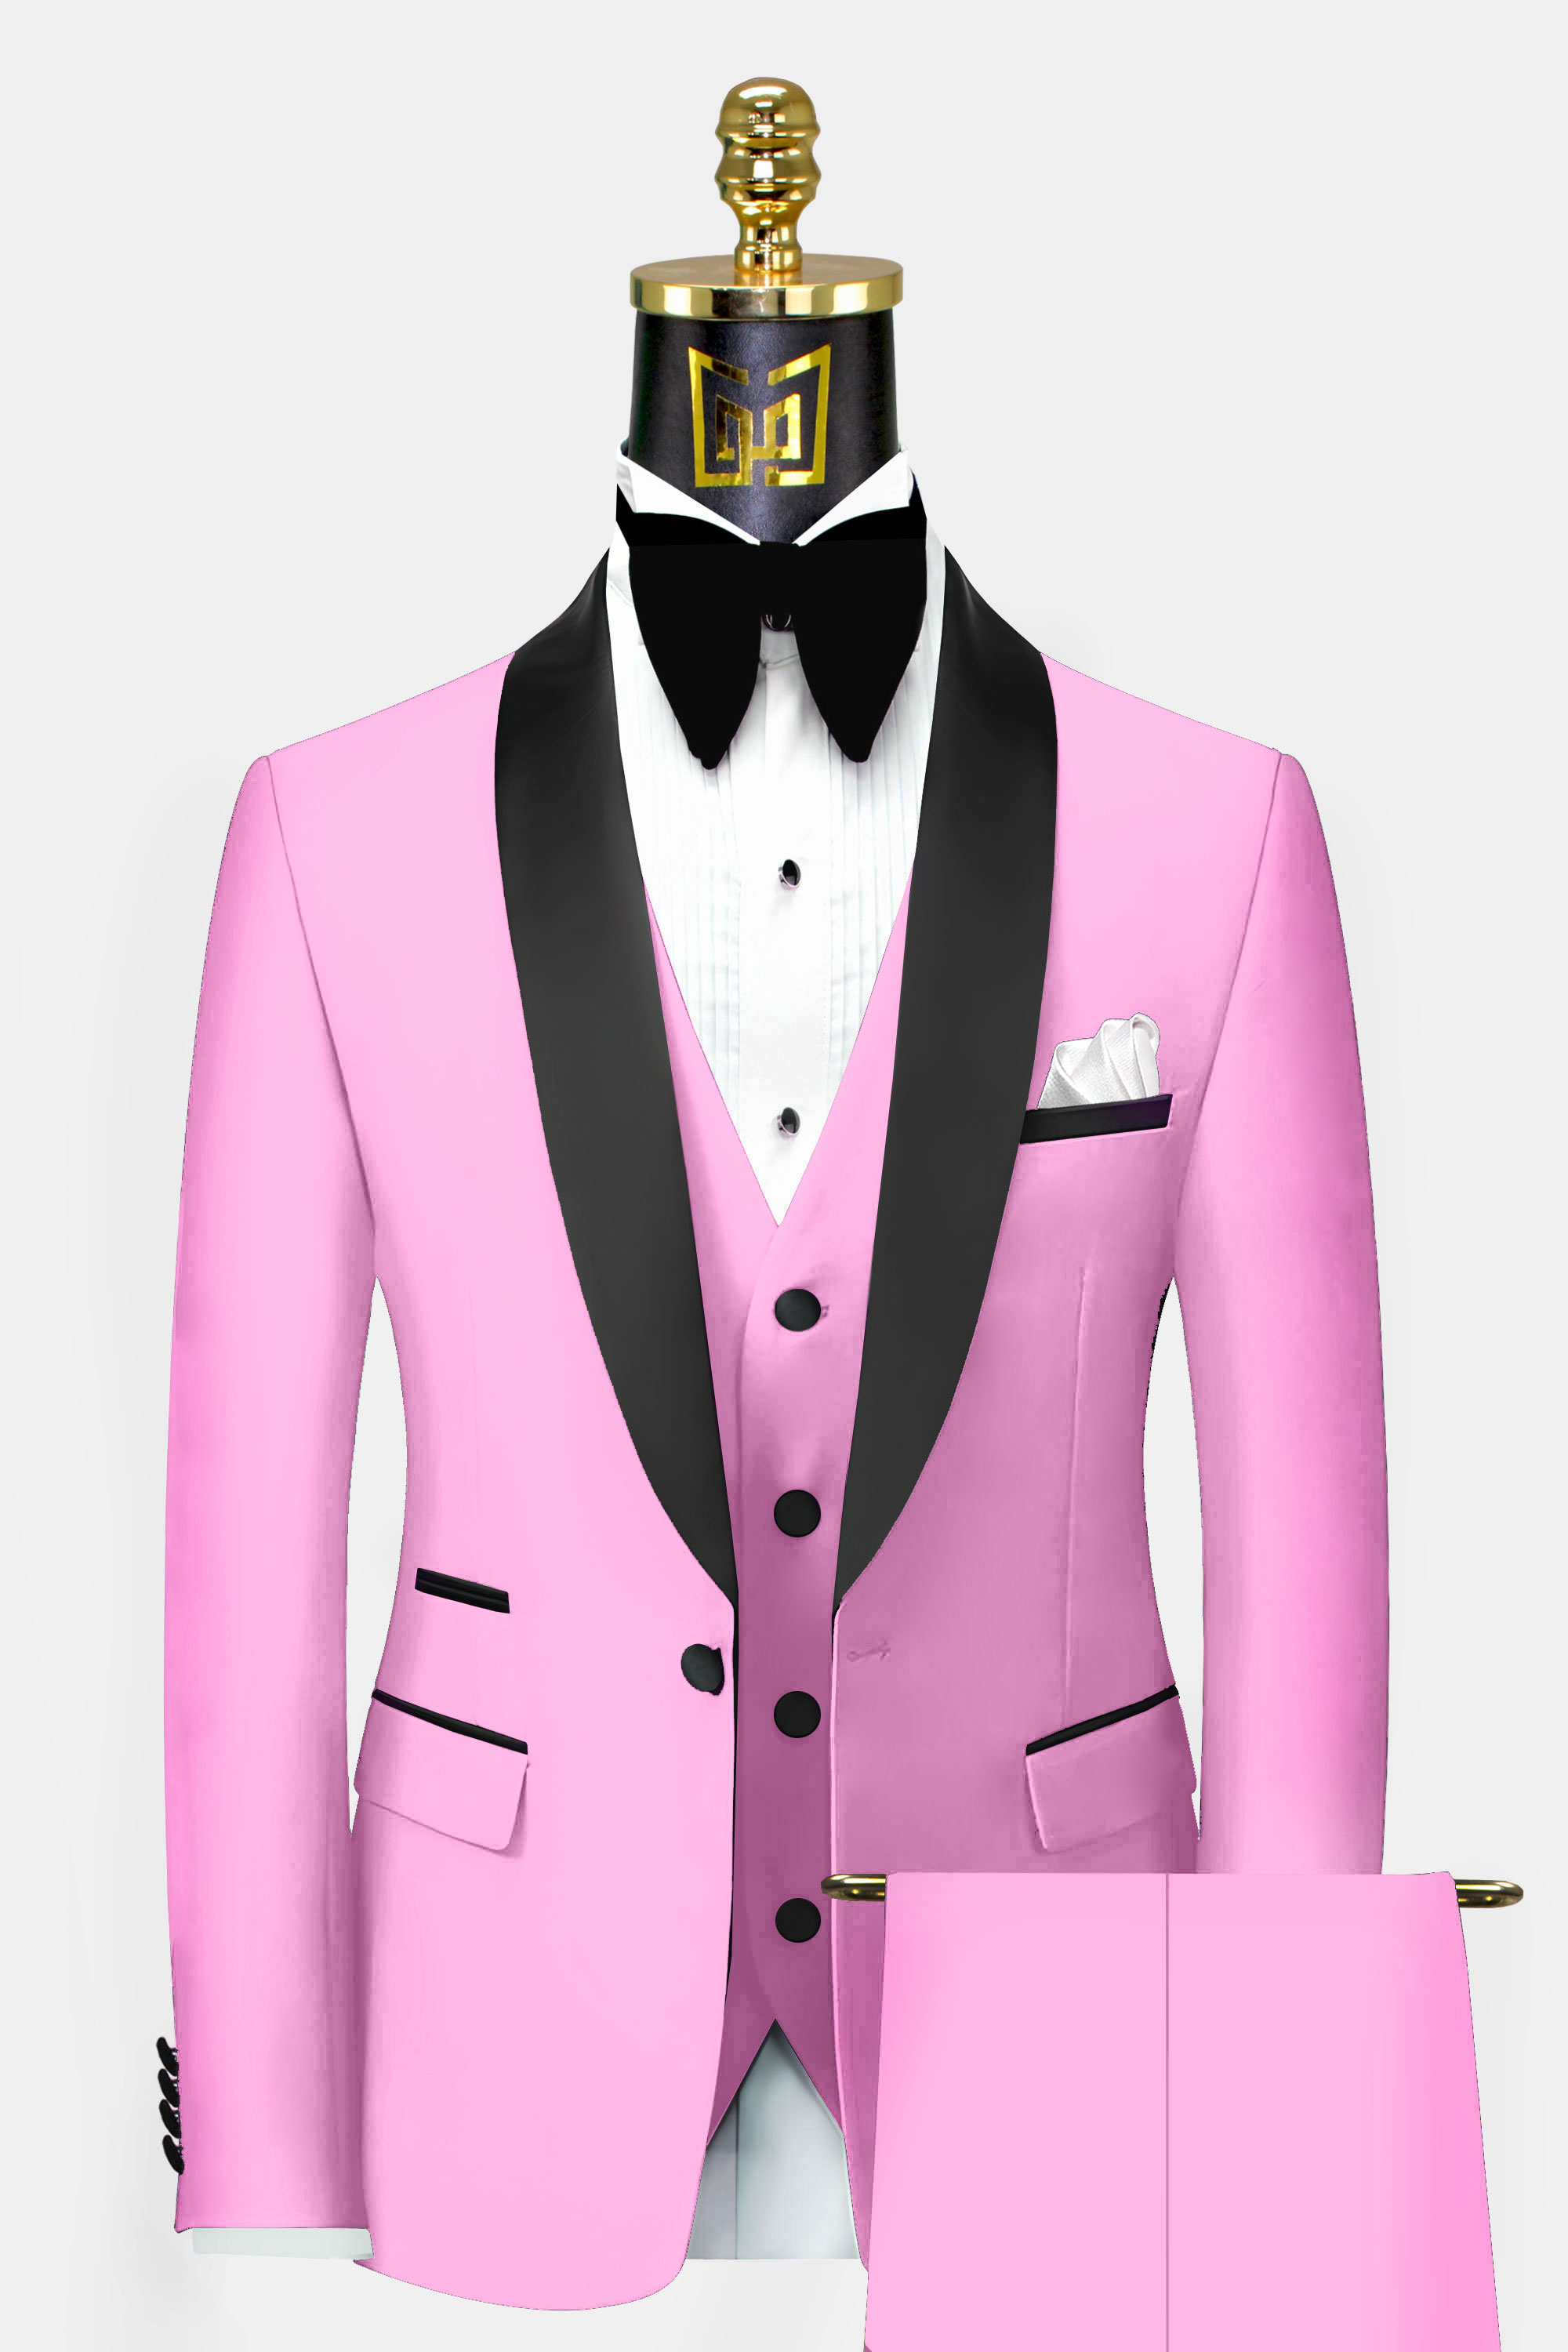 Mens-Baby-Pink-Tuxedo-Wedding-Groom-Prom-Suit-from-Gentlemansguru.com